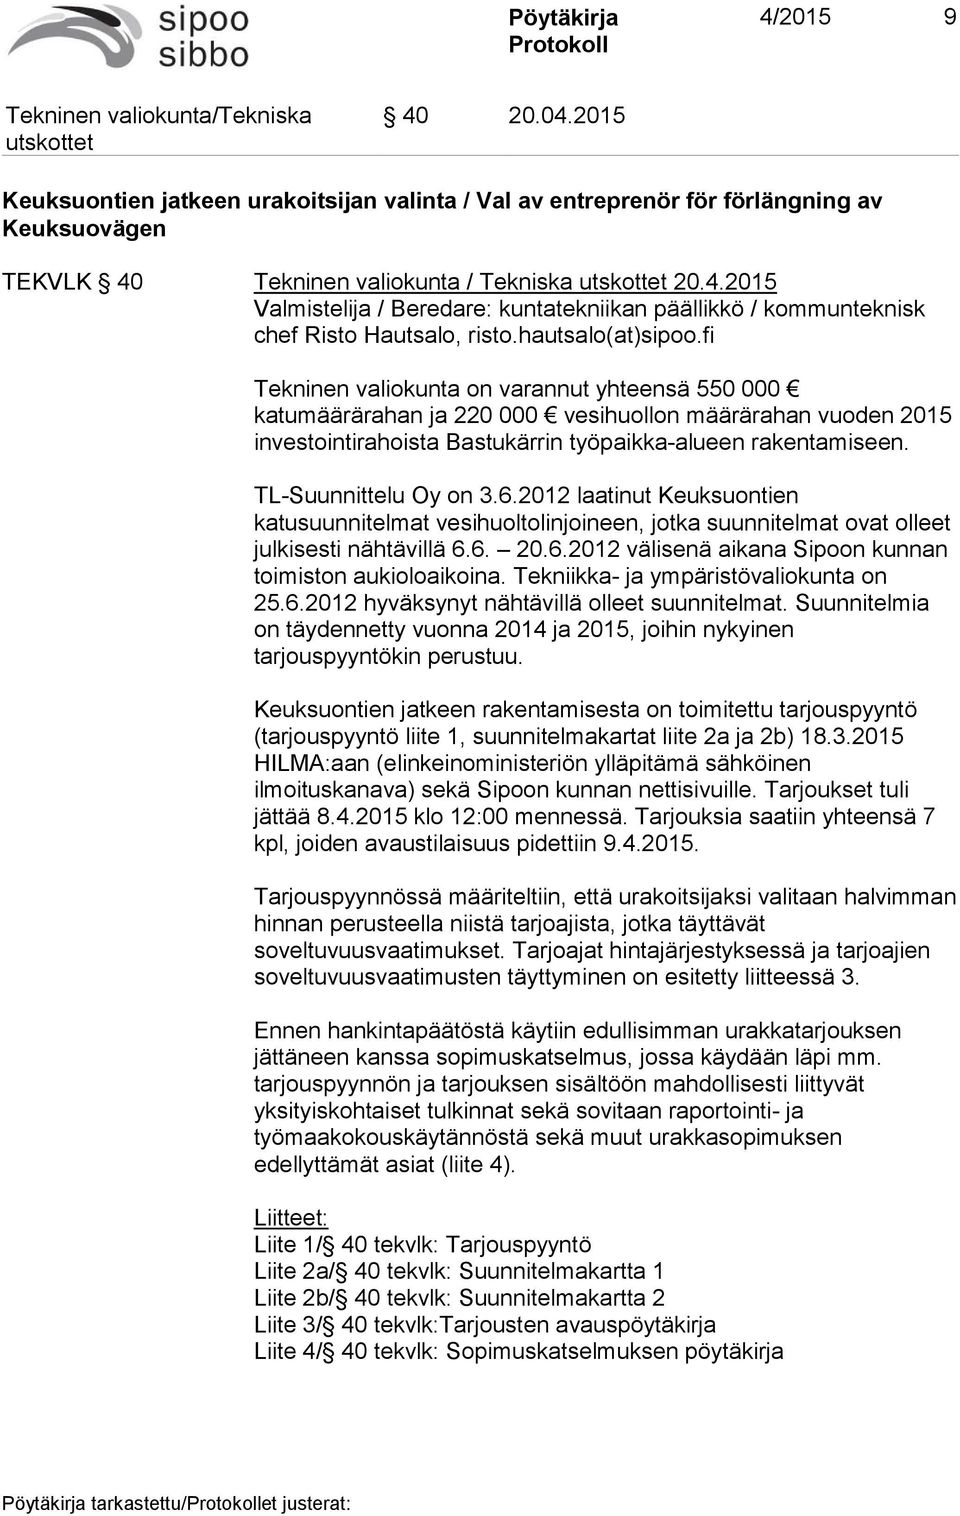 TL-Suunnittelu Oy on 3.6.2012 laatinut Keuksuontien katusuunnitelmat vesihuoltolinjoineen, jotka suunnitelmat ovat olleet julkisesti nähtävillä 6.6. 20.6.2012 välisenä aikana Sipoon kunnan toimiston aukioloaikoina.